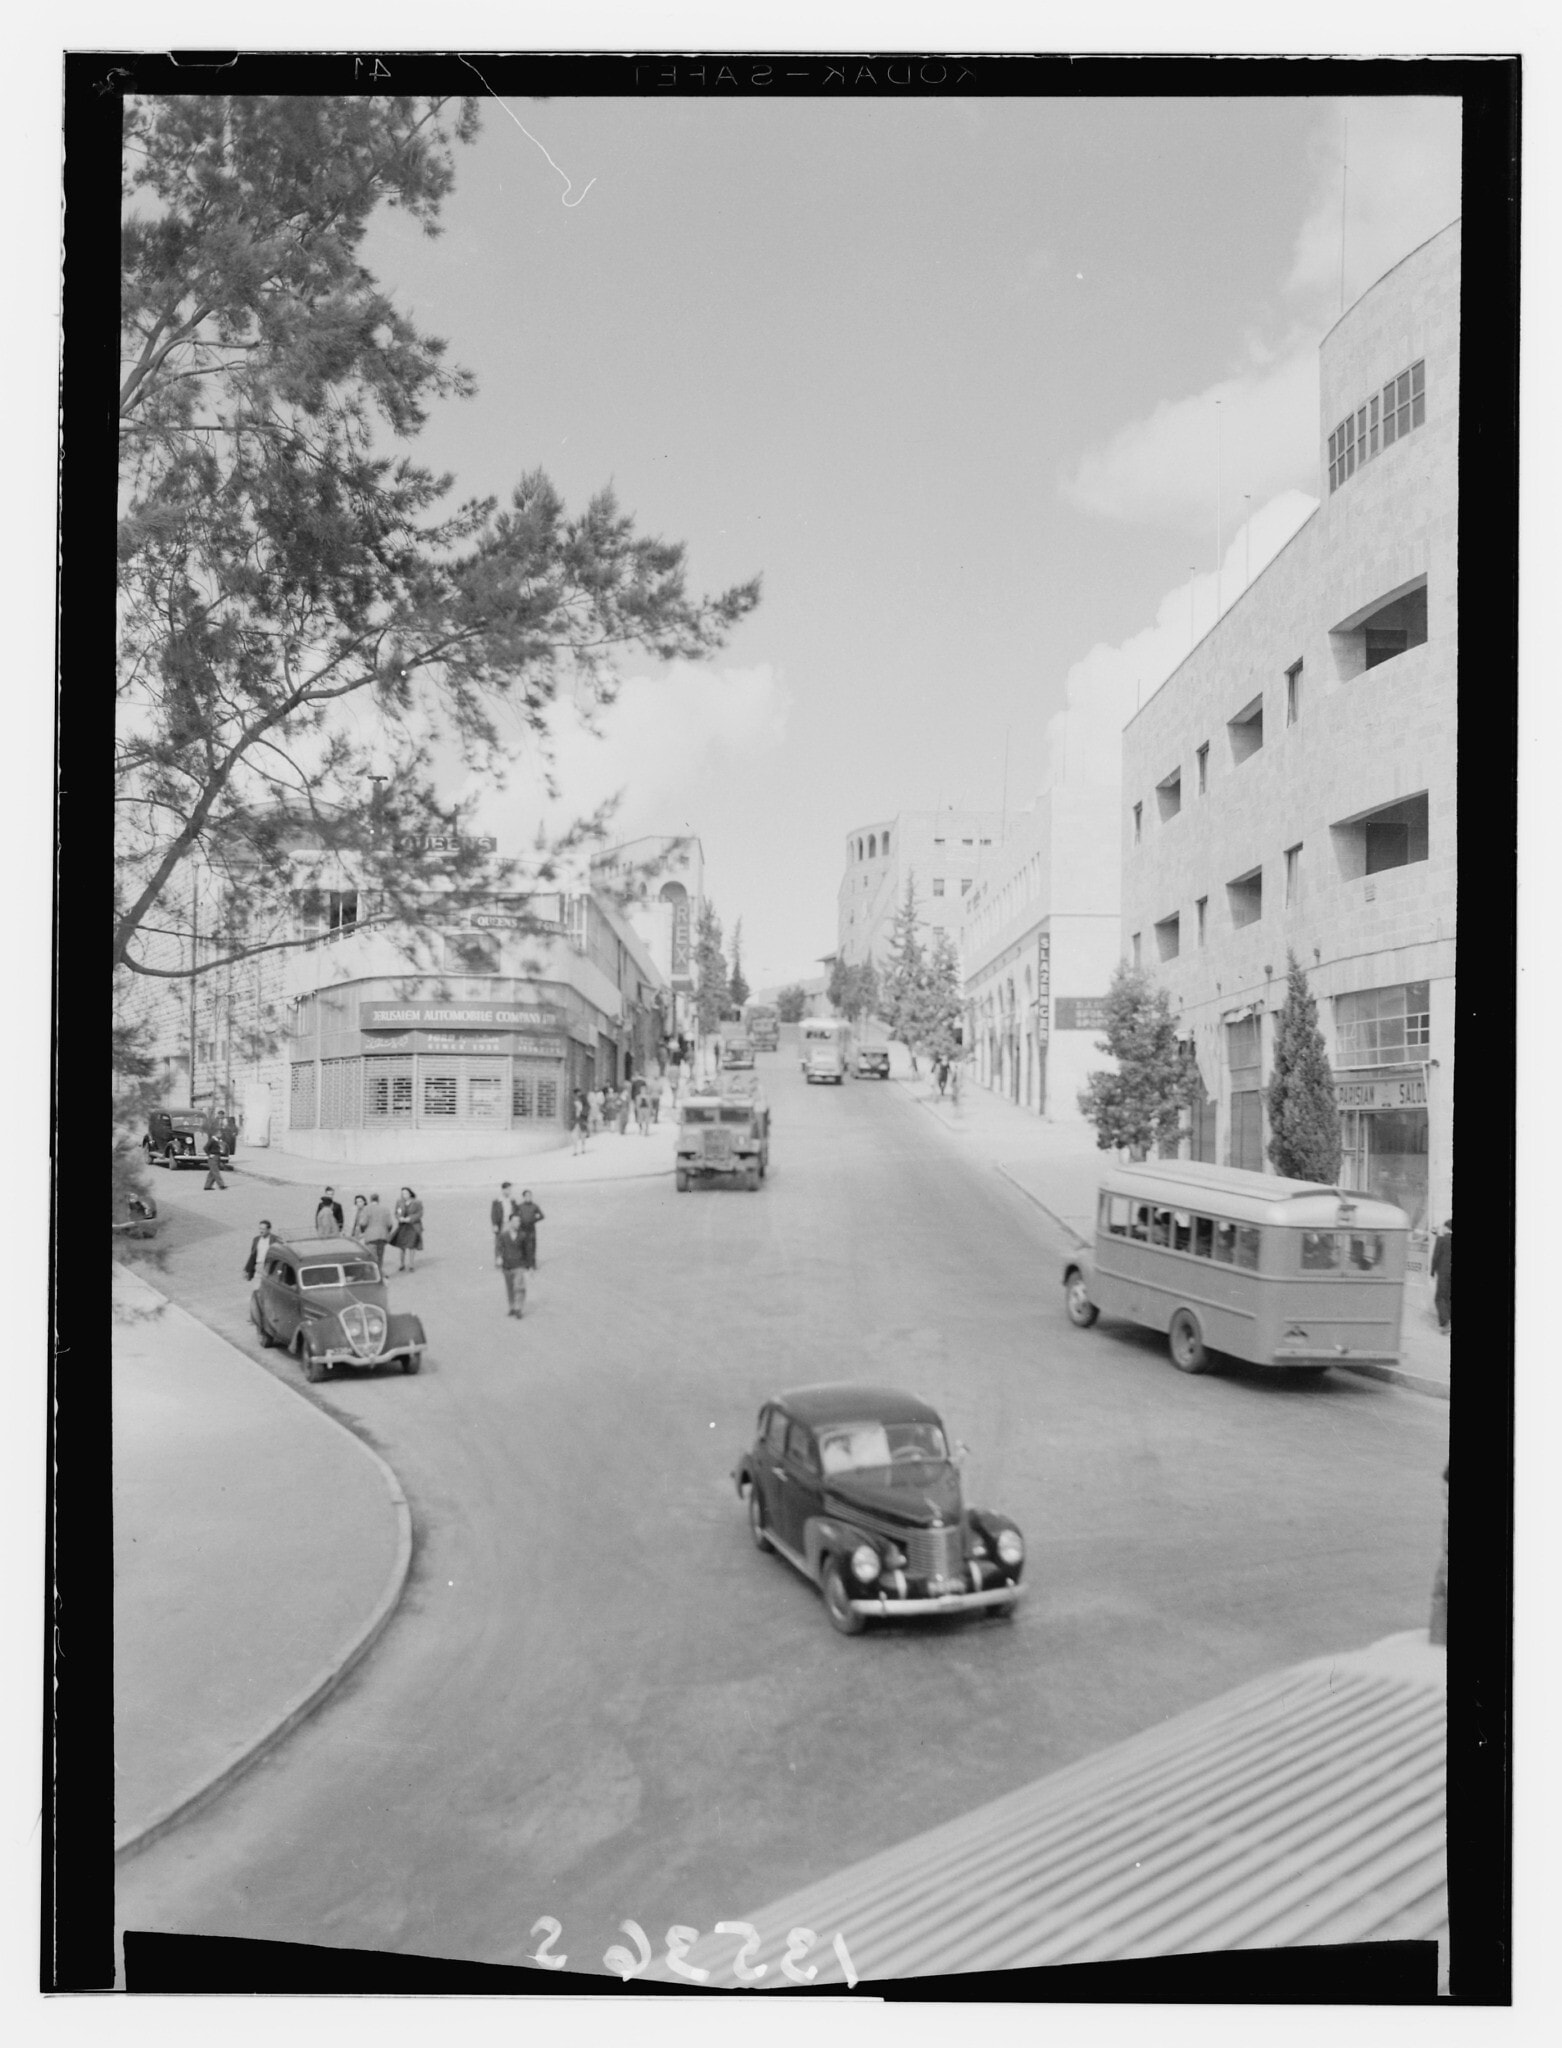 רחוב הנסיכה מארי בירושלים, בין 1940 ל-1946. ניתן לראות את קולנוע רקס מרחוק, מצד שמאל (צילום: ספריית הקונגרס באמצעות Wikicommons)